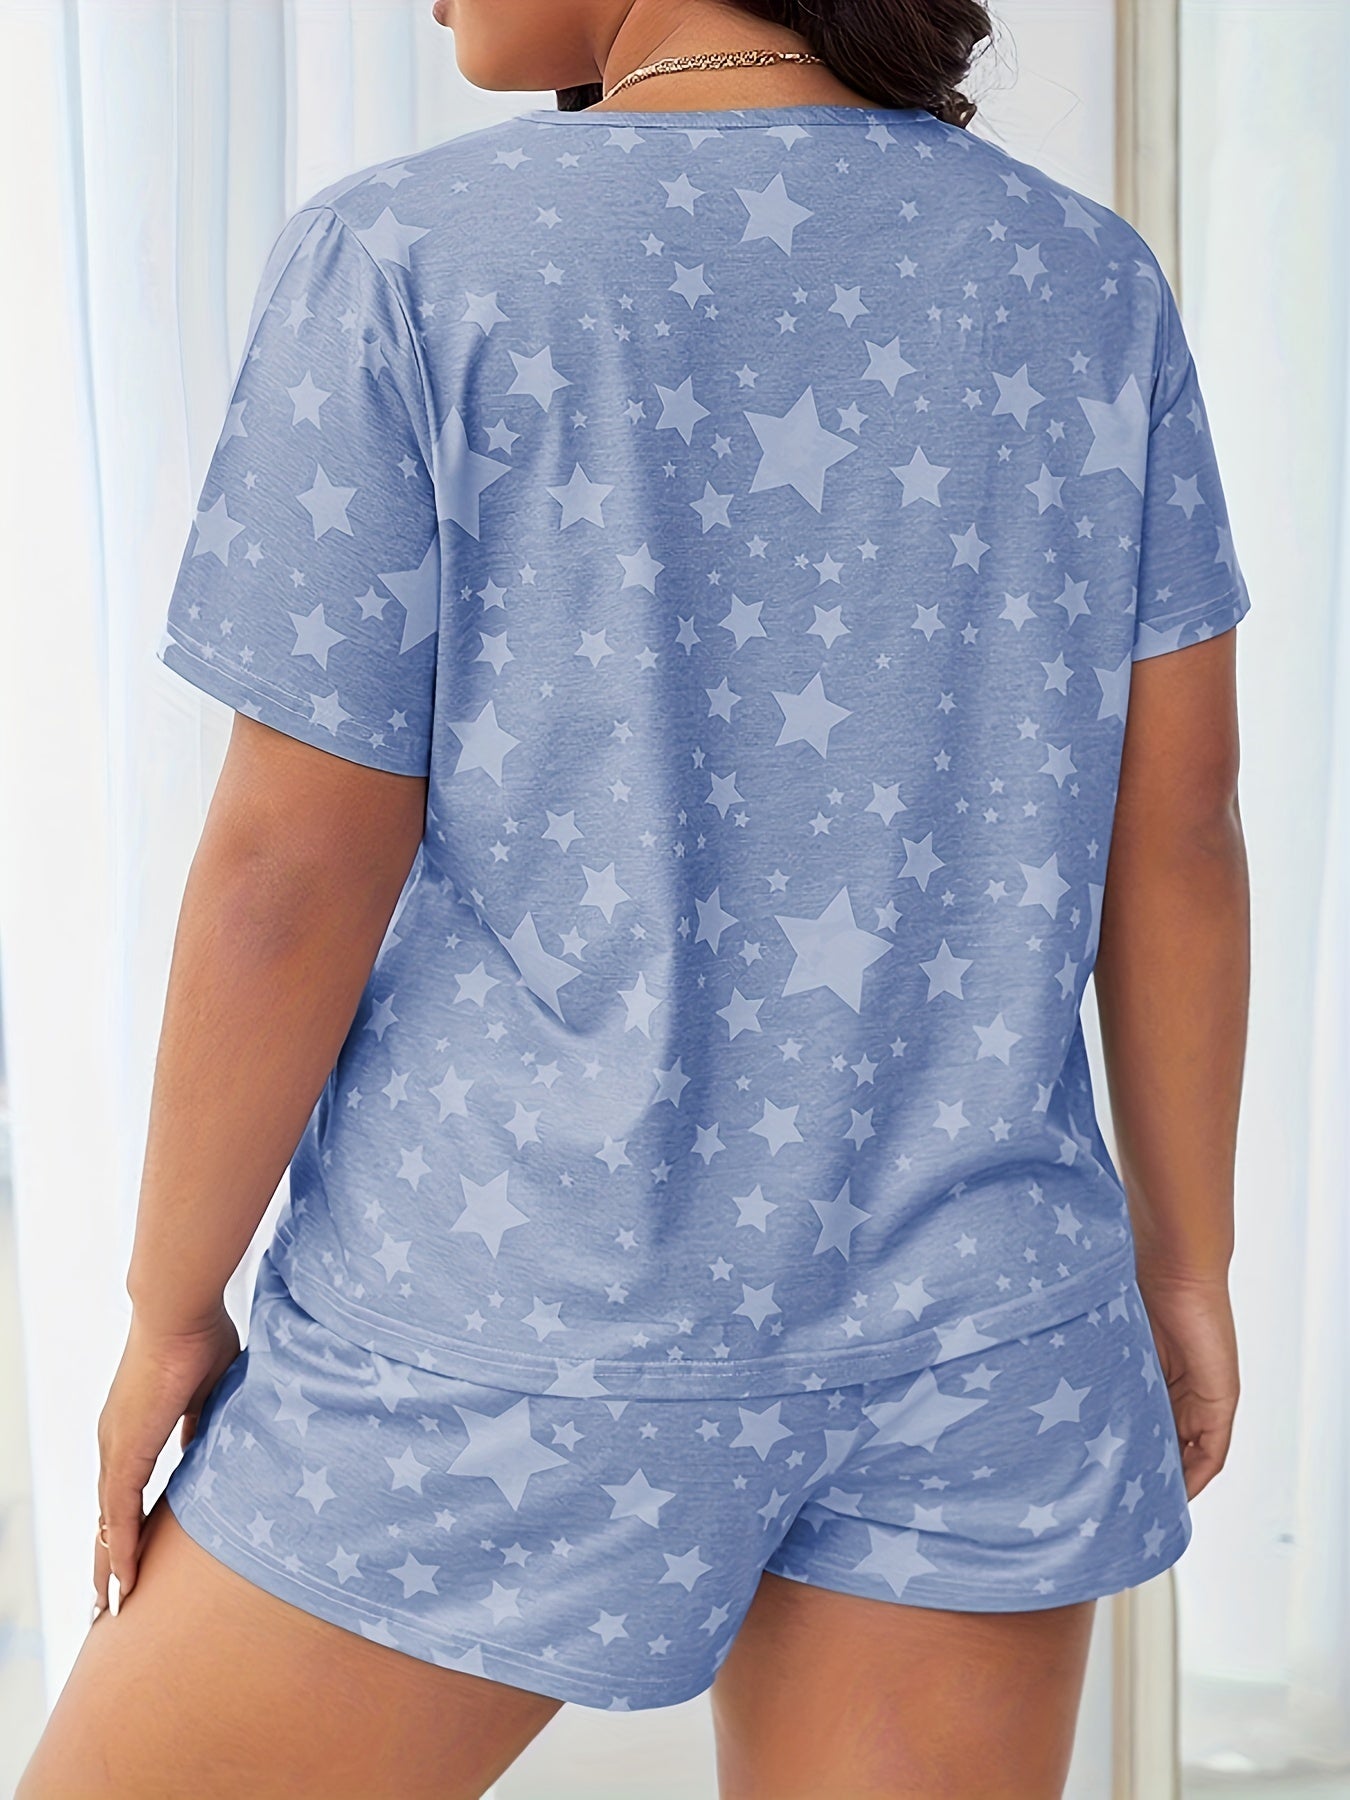 Plus Size Galaxy Star Print Two-Piece Pajama Set